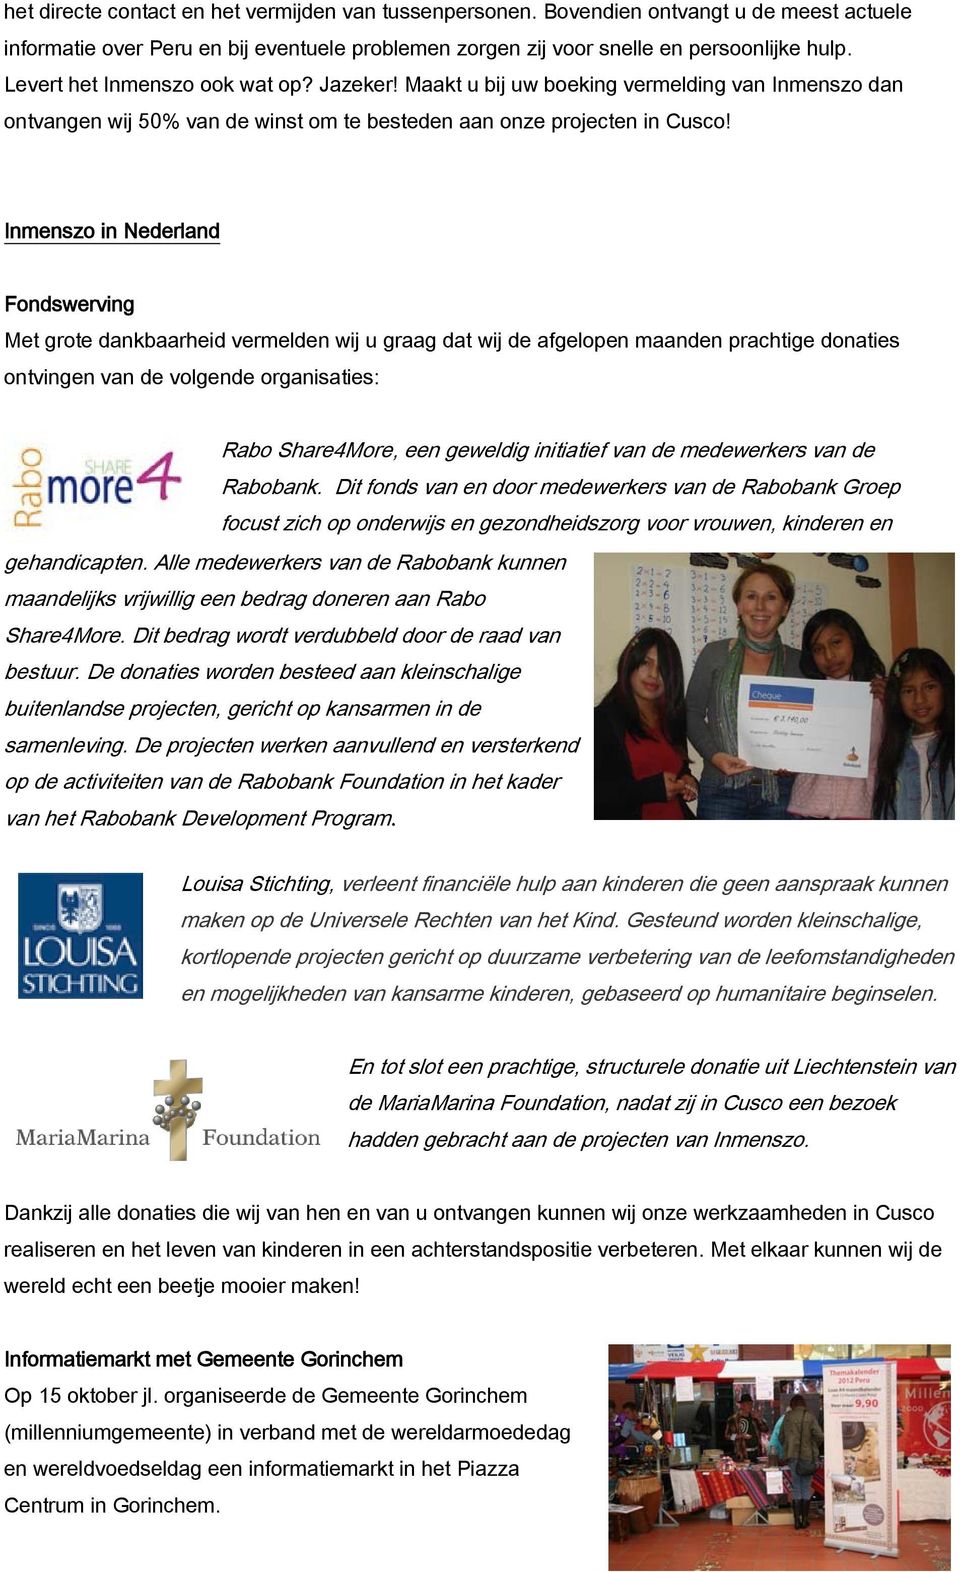 Inmenszo in Nederland Fondswerving Met grote dankbaarheid vermelden wij u graag dat wij de afgelopen maanden prachtige donaties ontvingen van de volgende organisaties: Rabo Share4More, een geweldig